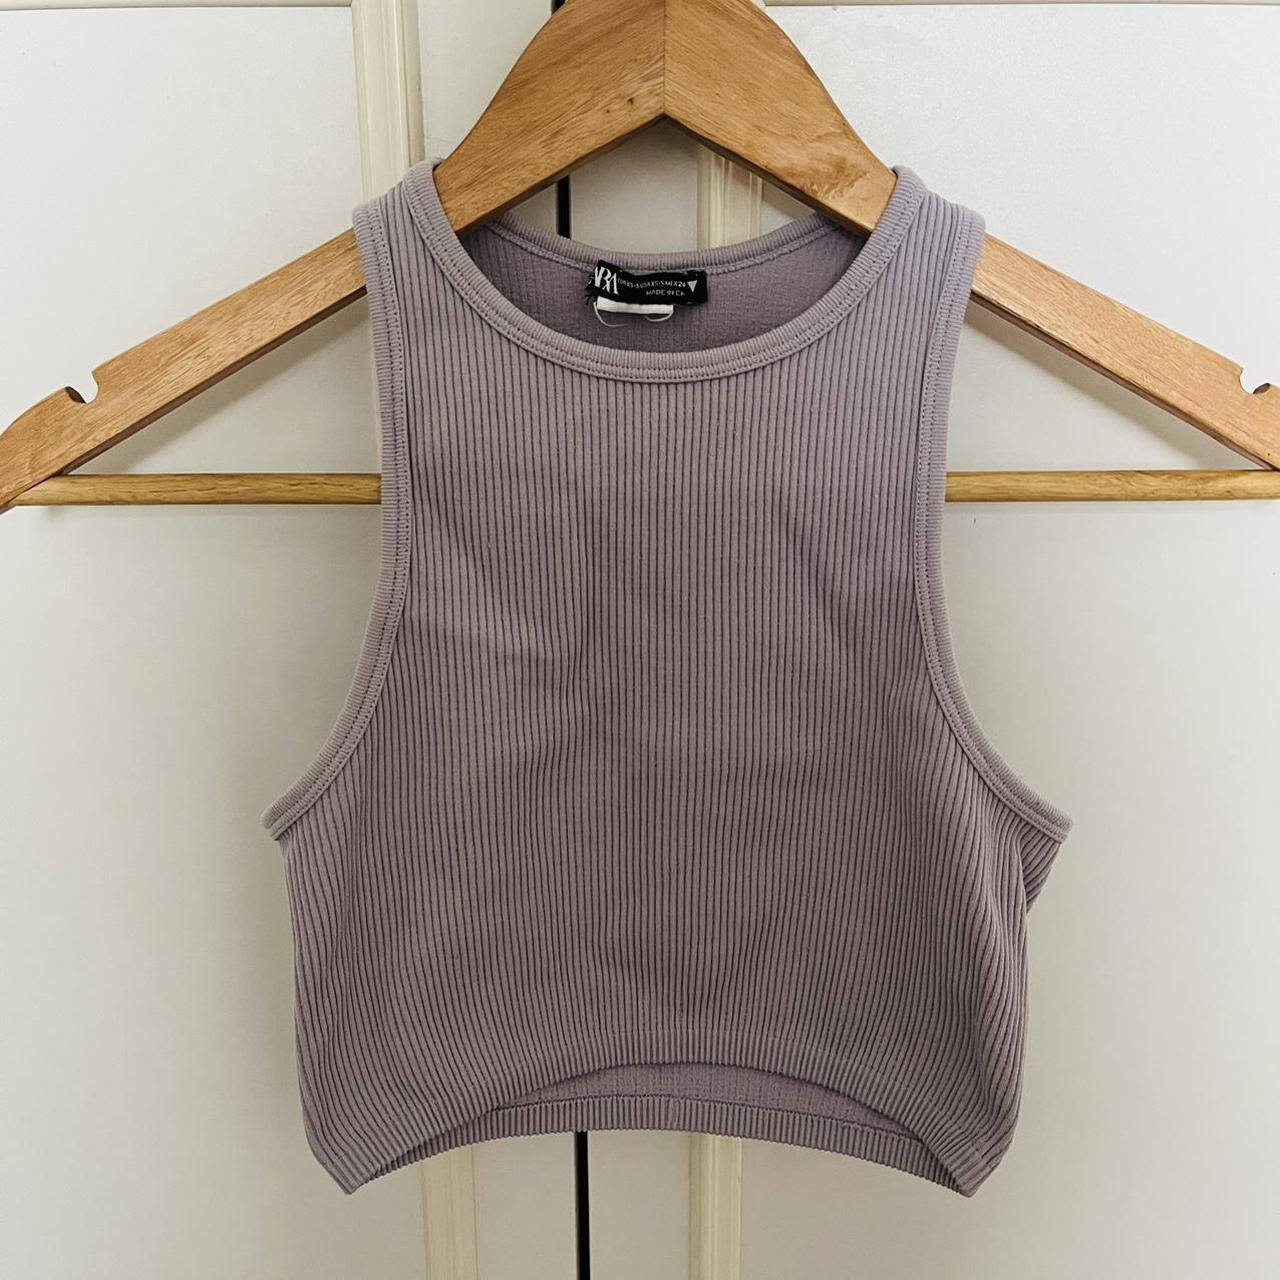 Zara Women's Purple Vest | Depop